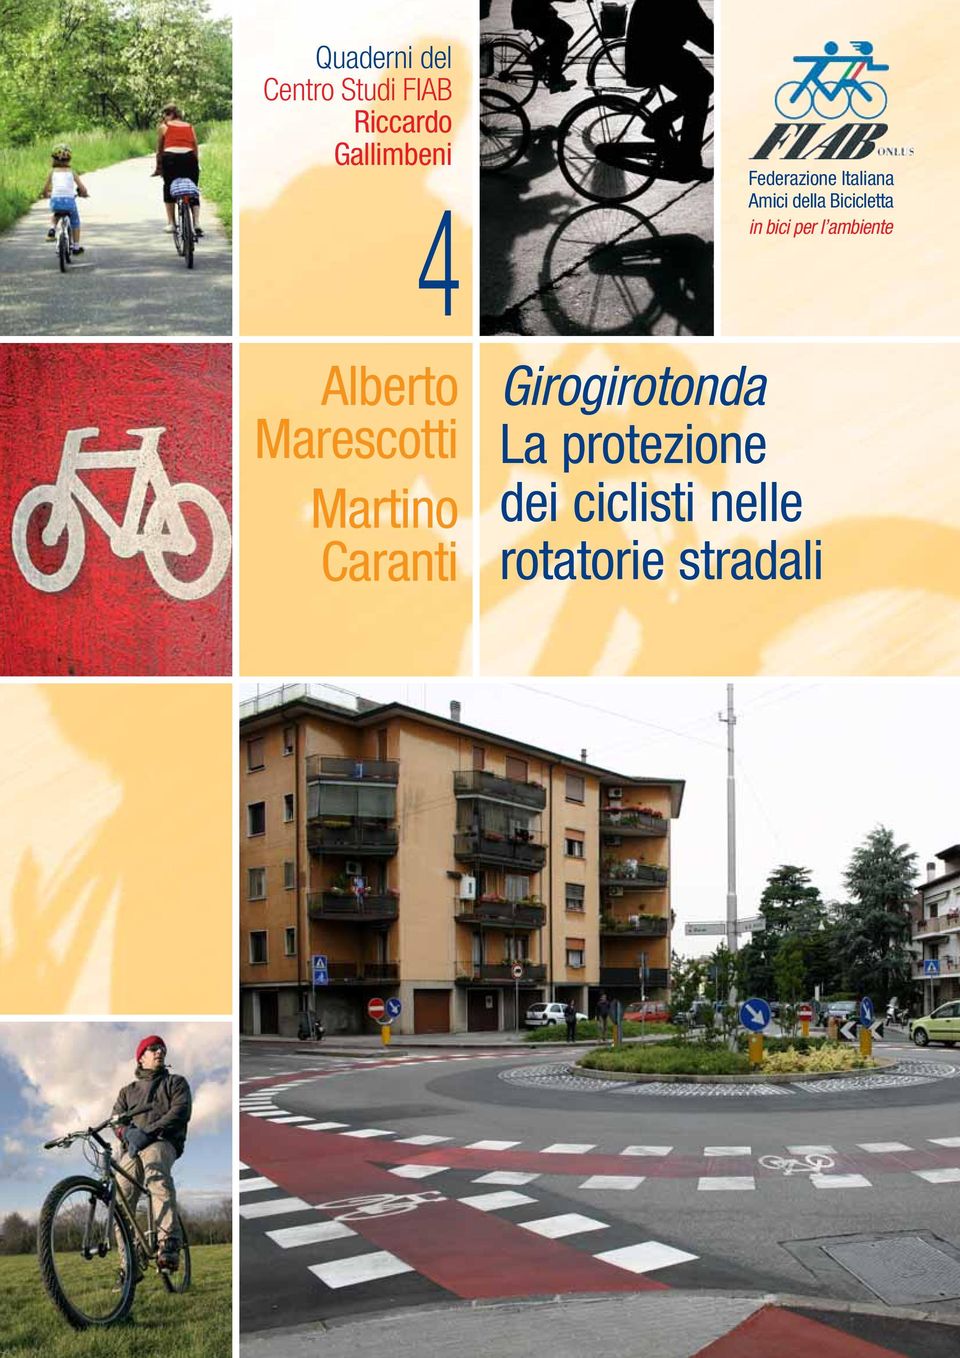 Italiana Amici della Bicicletta in bici per l ambiente